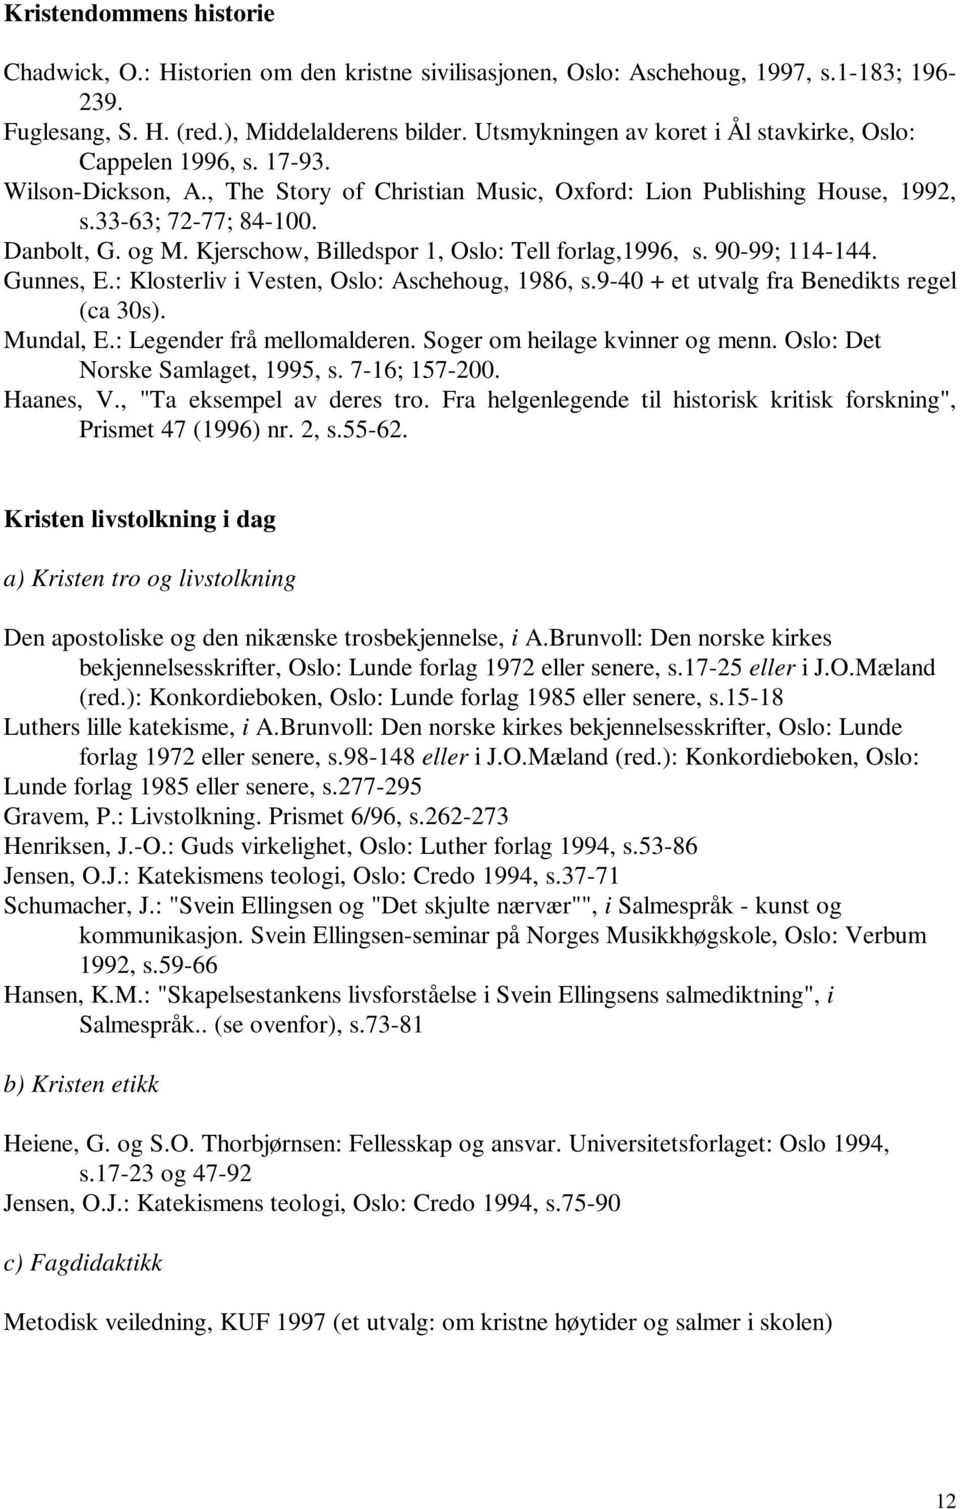 Kjerschow, Billedspor 1, Oslo: Tell forlag,1996, s. 90-99; 114-144. Gunnes, E.: Klosterliv i Vesten, Oslo: Aschehoug, 1986, s.9-40 + et utvalg fra Benedikts regel (ca 30s). Mundal, E.